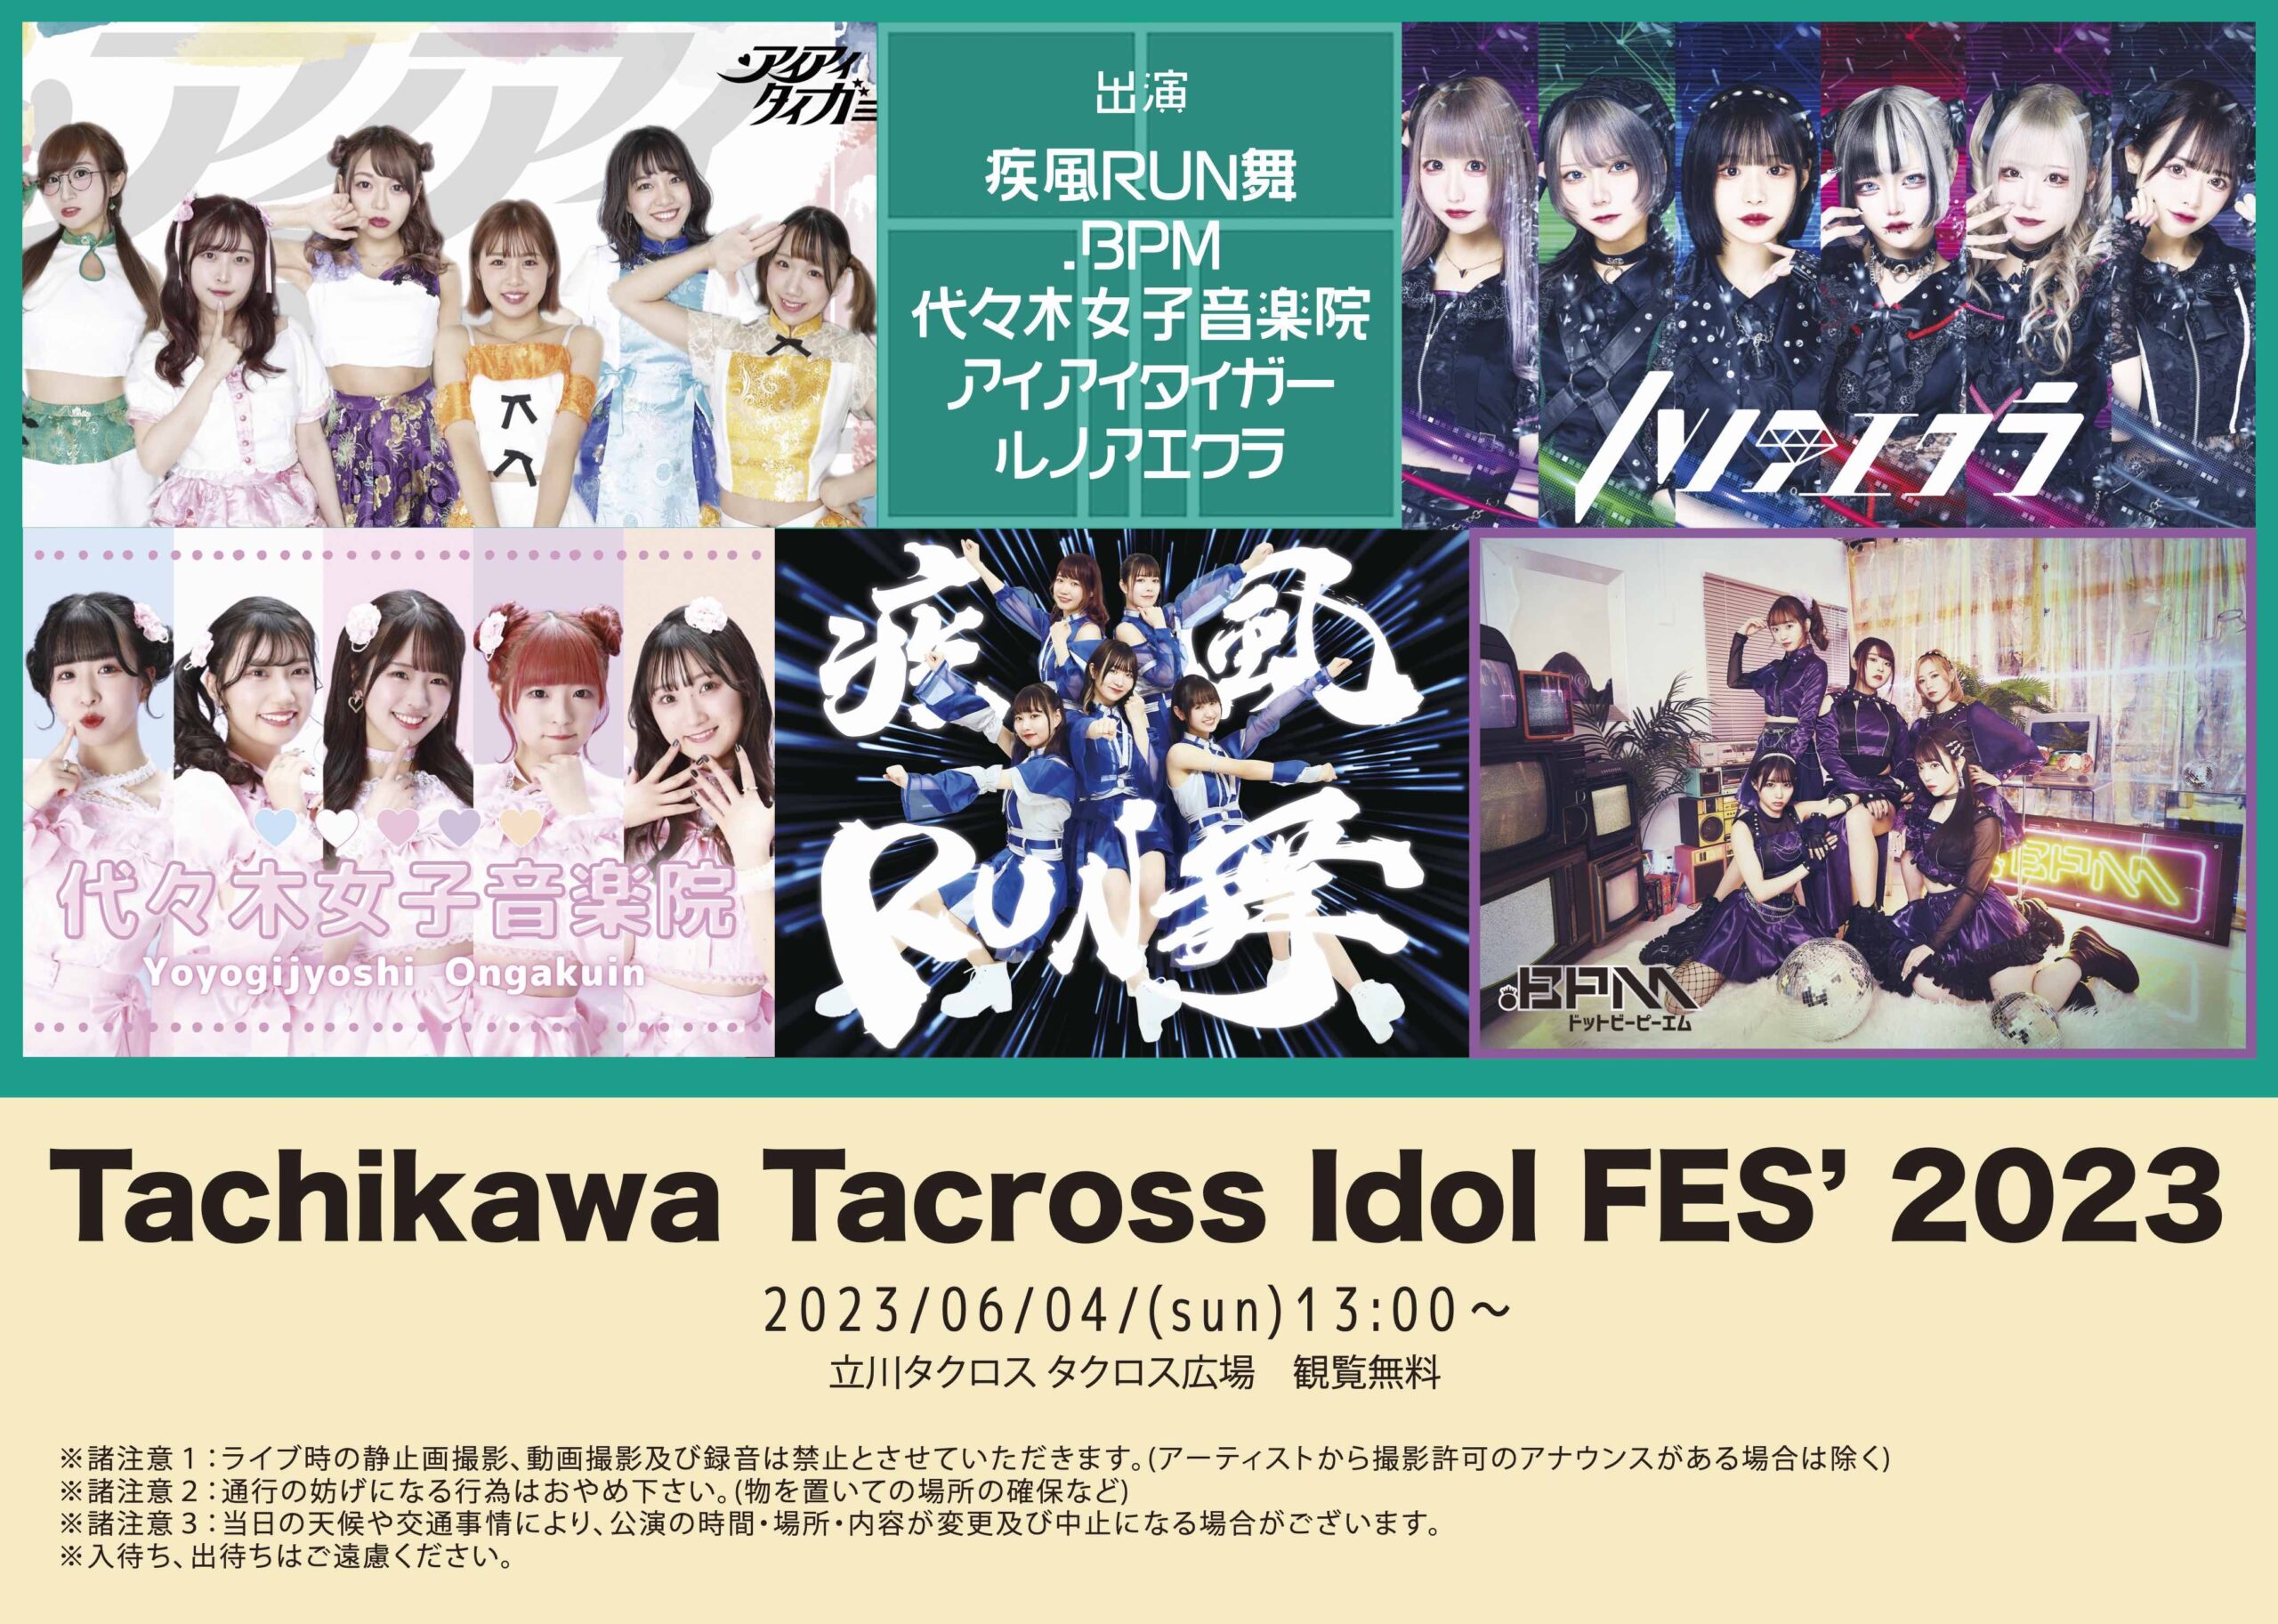 Tachikawa Tacross Idol FES’ 2023